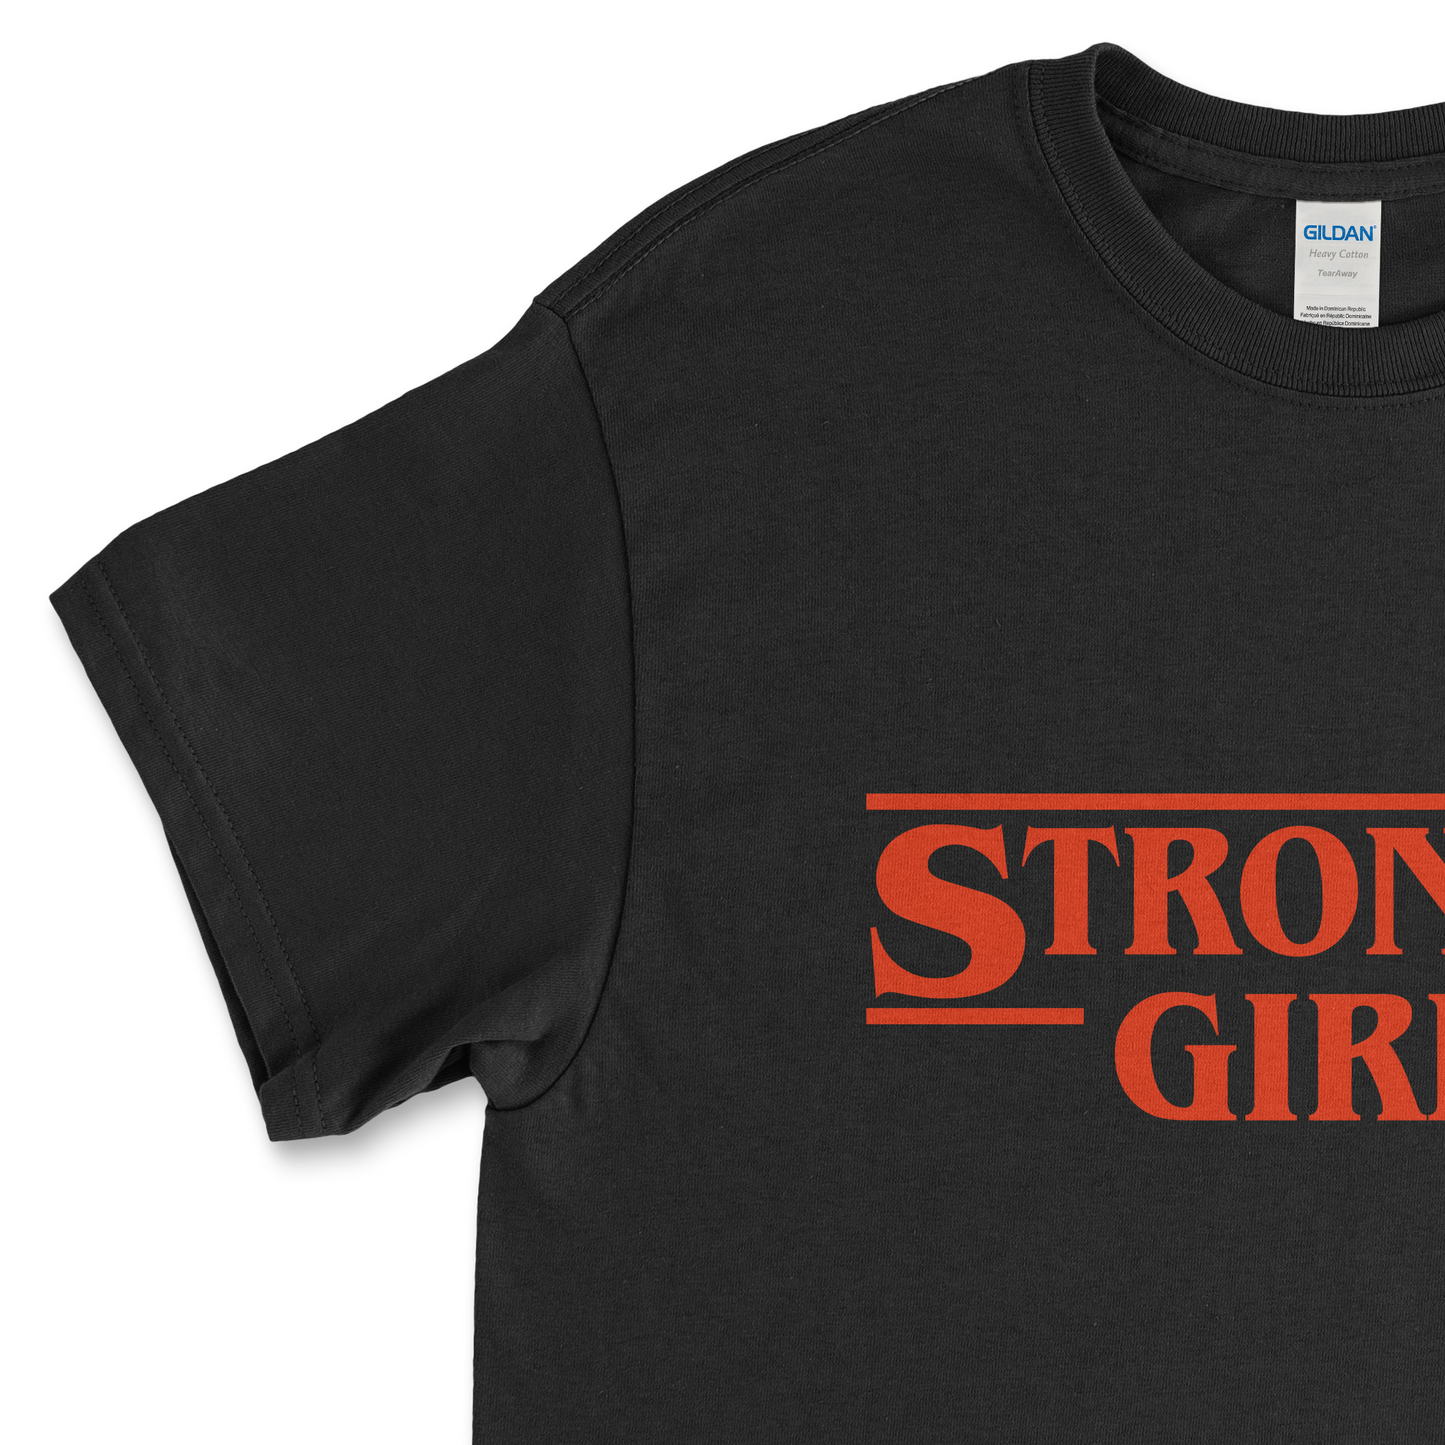 Stronger Girls Feminist T-Shirt